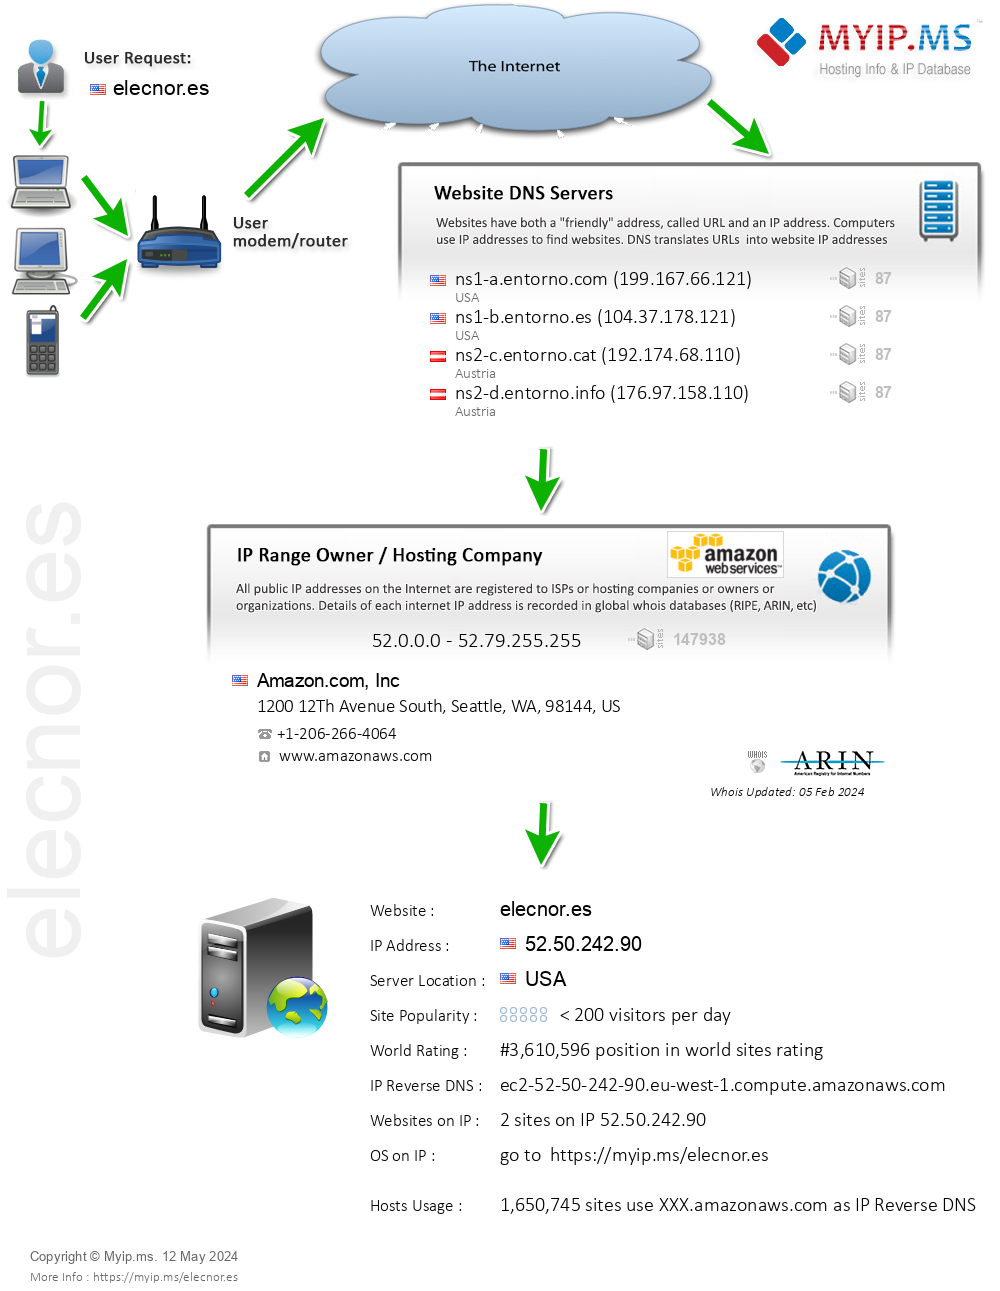 Elecnor.es - Website Hosting Visual IP Diagram